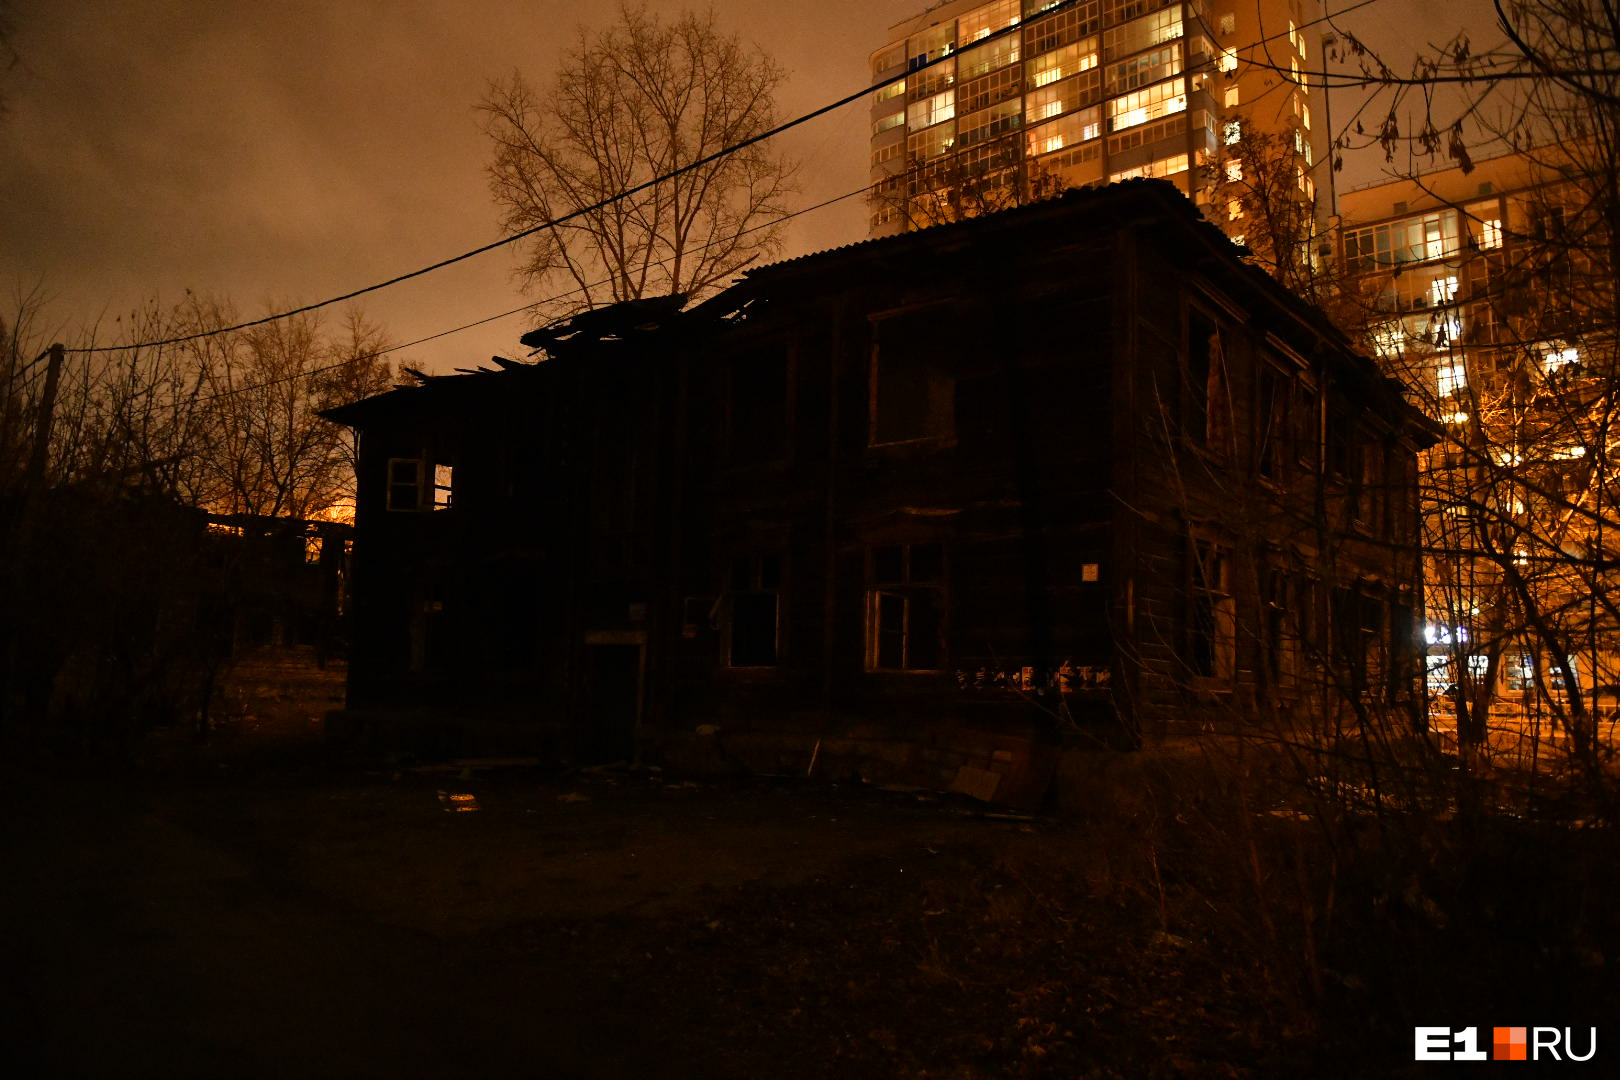 При этом жилые дома соседствуют с обгоревшими остовами деревянных бараков